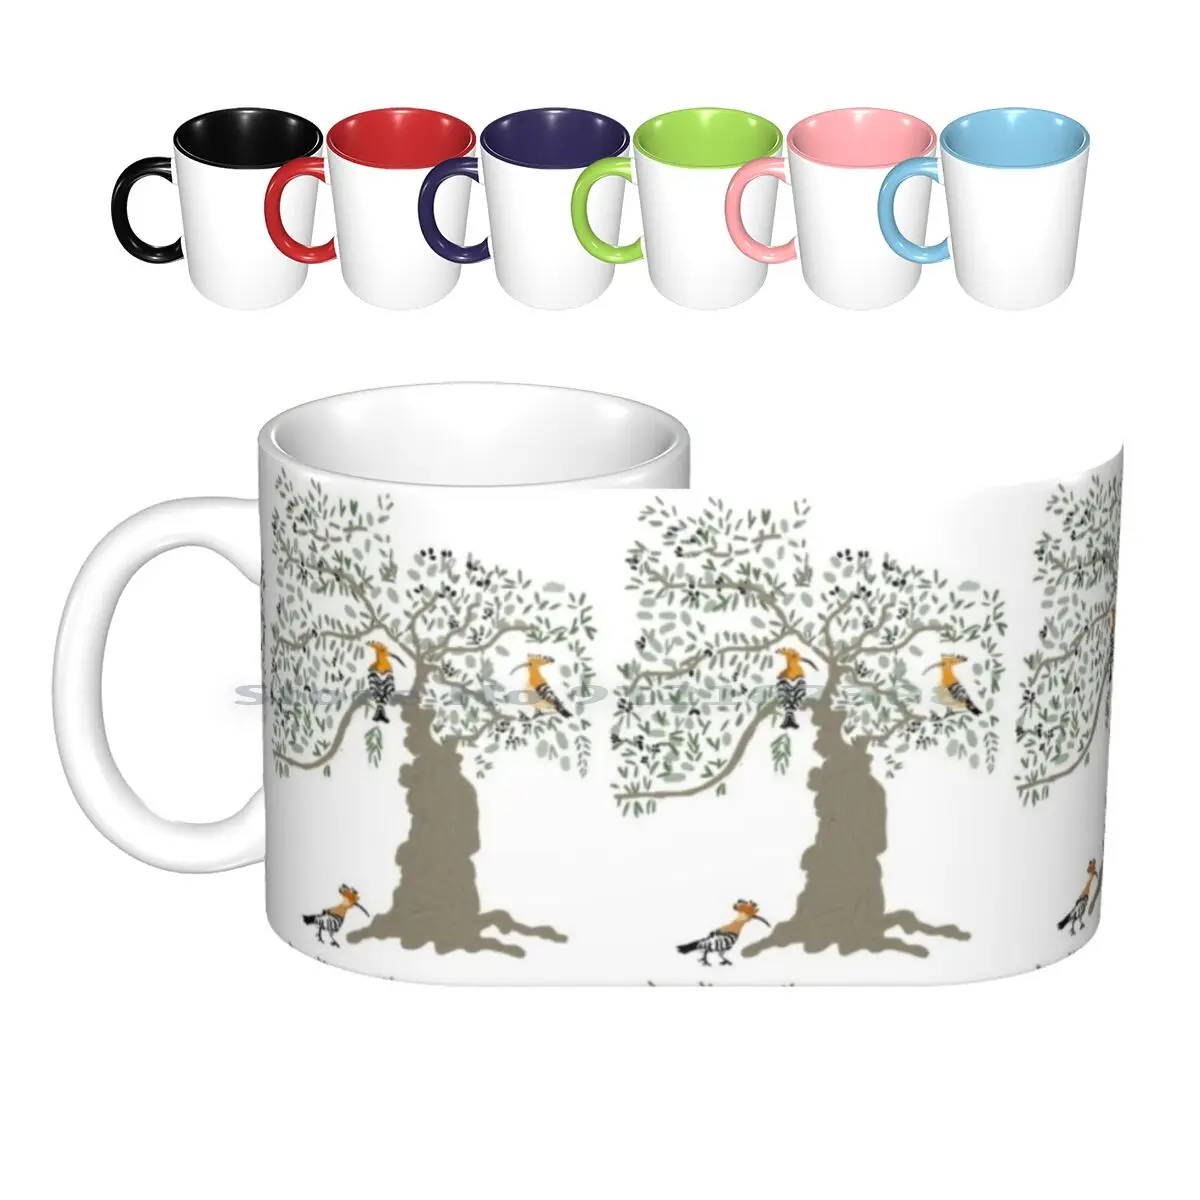 

Керамические кружки Hoopoe с изображением птиц в дереве, кофейные чашки, Кружка для молока и чая, оливковые деревья, оливки, средиземноморские птицы, природа, Испания, креативные